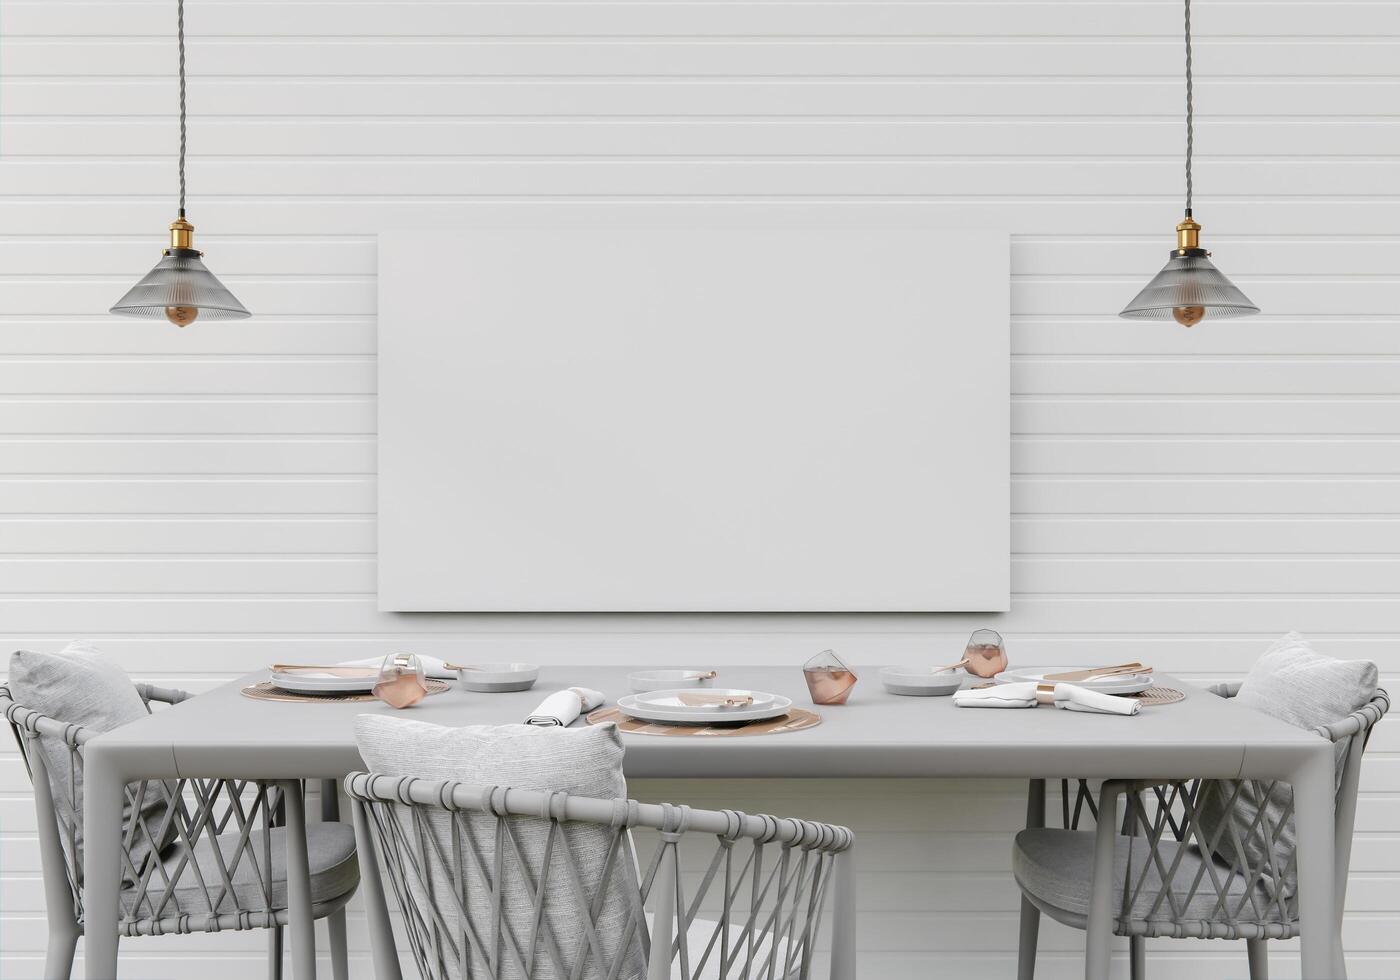 cozinha com utensílios de cozinha e molduras de parede, estilo 3d. foto